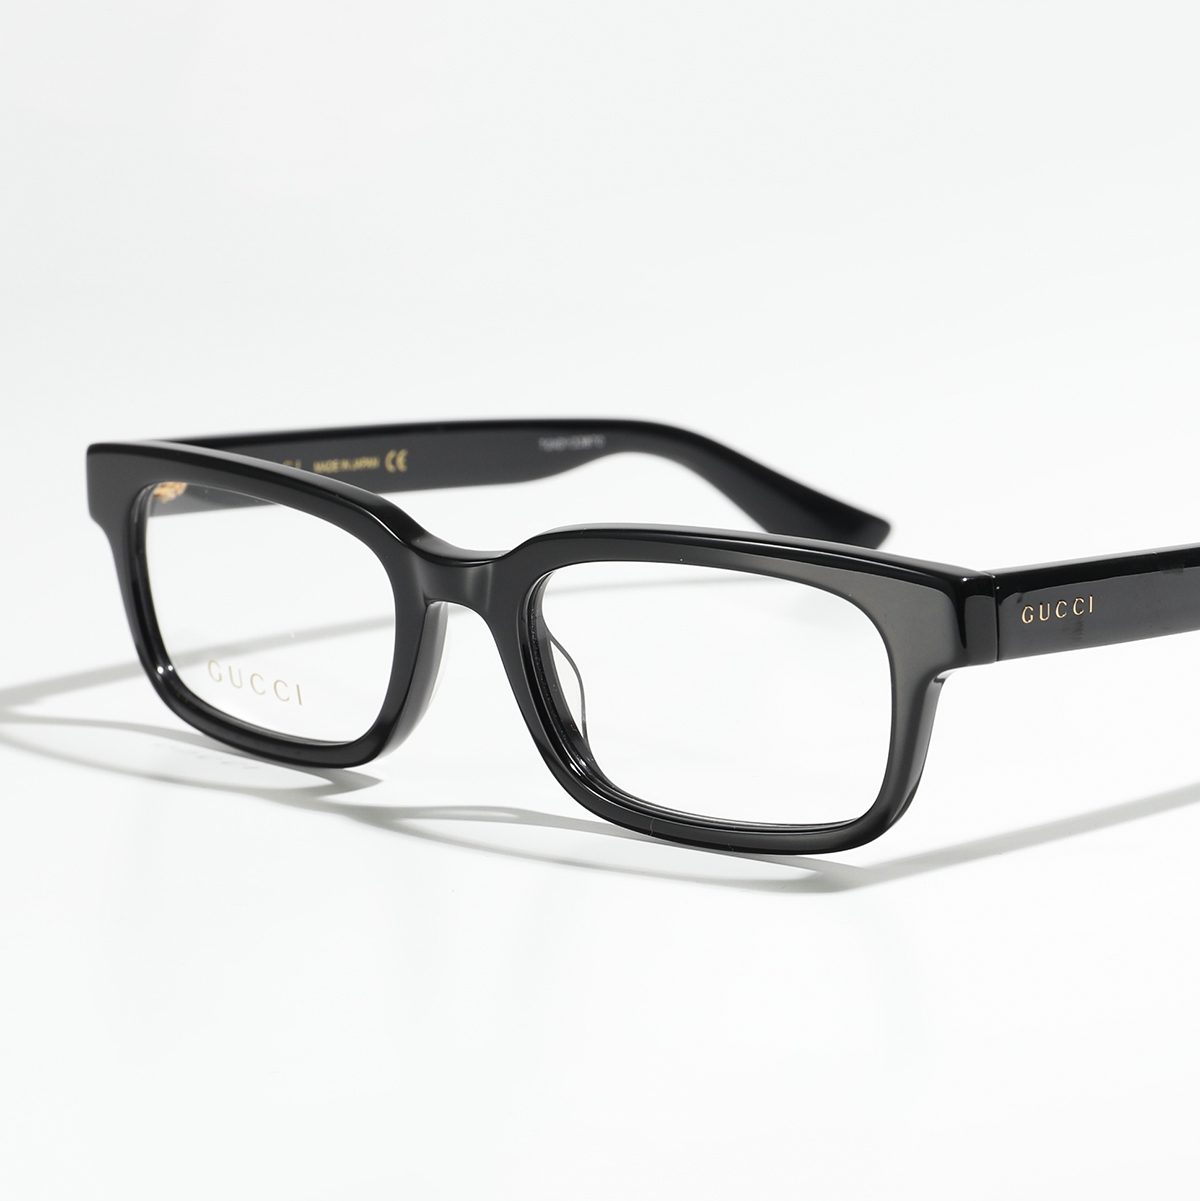 GUCCI グッチ メガネ GG0928O メンズ 眼鏡 フレーム 伊達メガネ ダテ スクエア型 アイウェア めがね 黒縁メガネ カラー3色